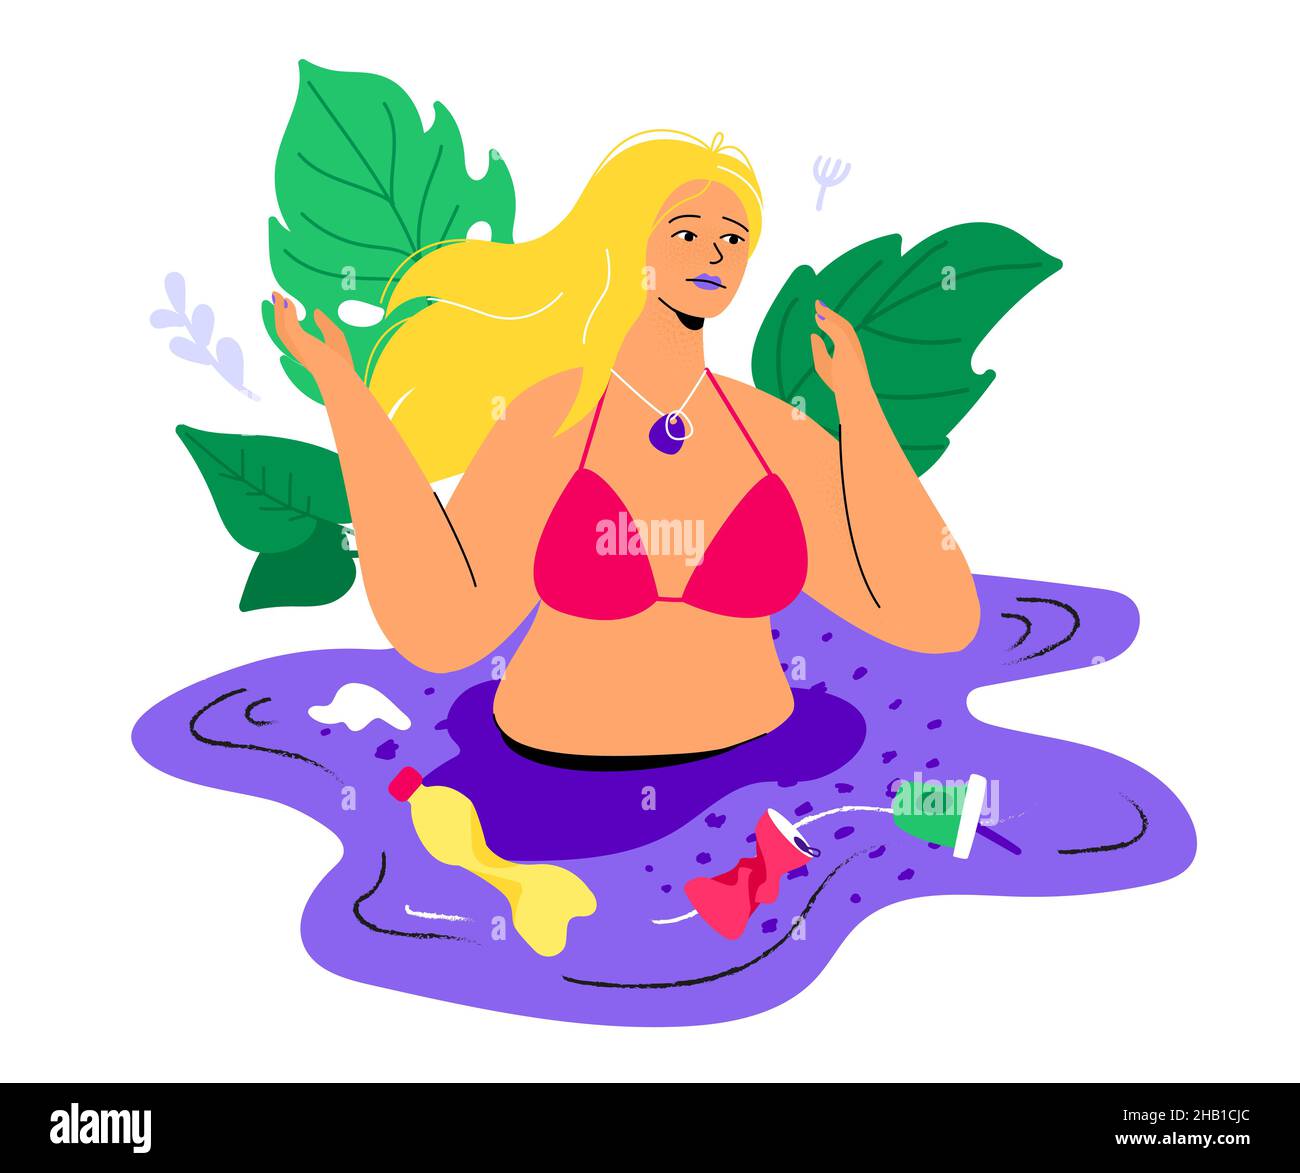 Weltmeere Verschmutzung - bunte flache Design Stil Illustration. Das Mädchen will im Wasser schwimmen, aber es wird vom Müll verdorben. Plastikflasche, wa Stock Vektor